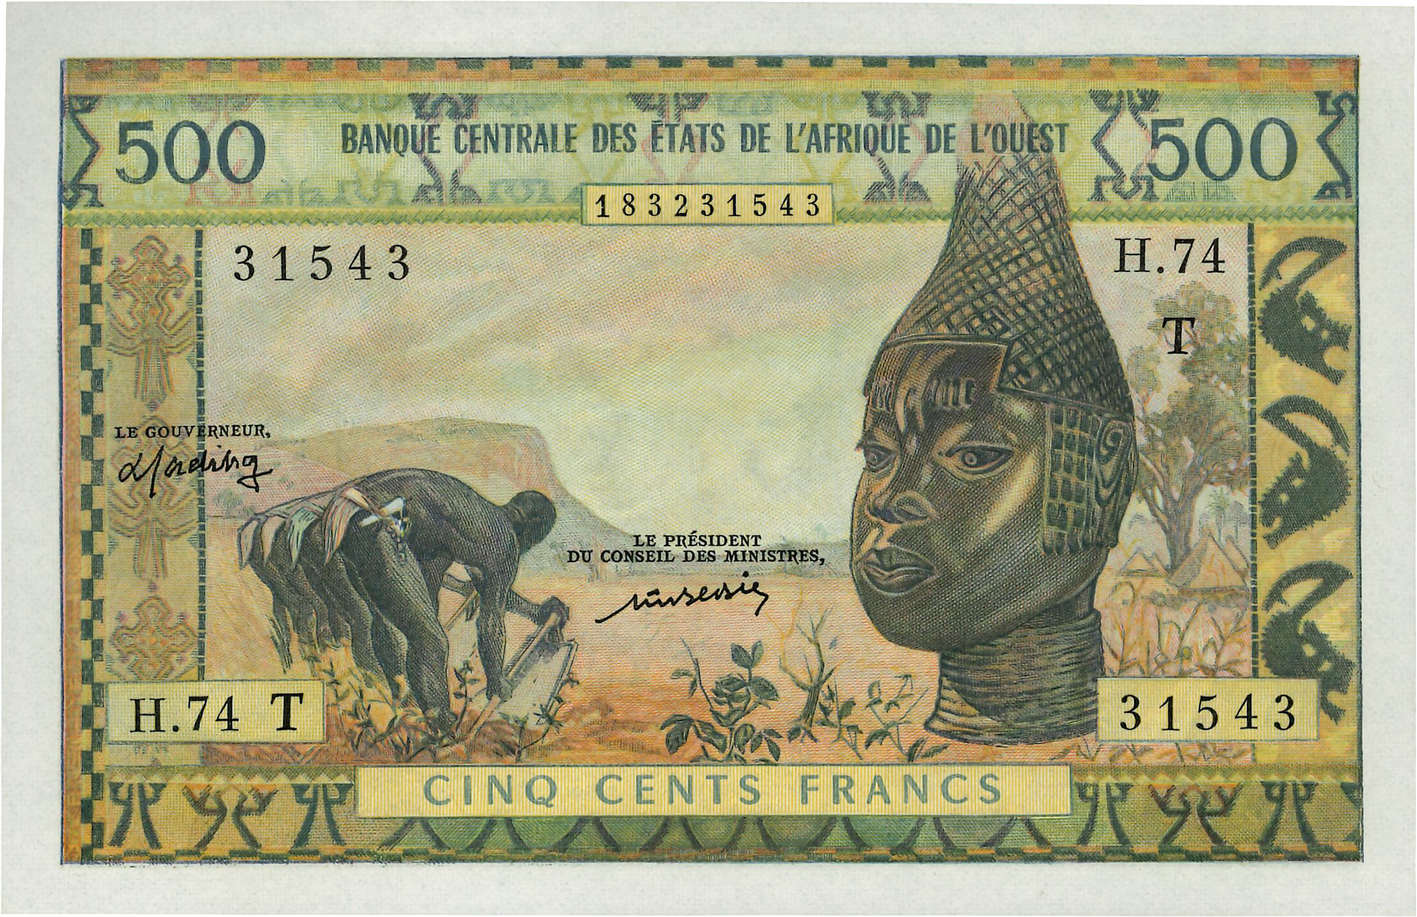 500 Francs ESTADOS DEL OESTE AFRICANO  1977 P.802Tm SC+